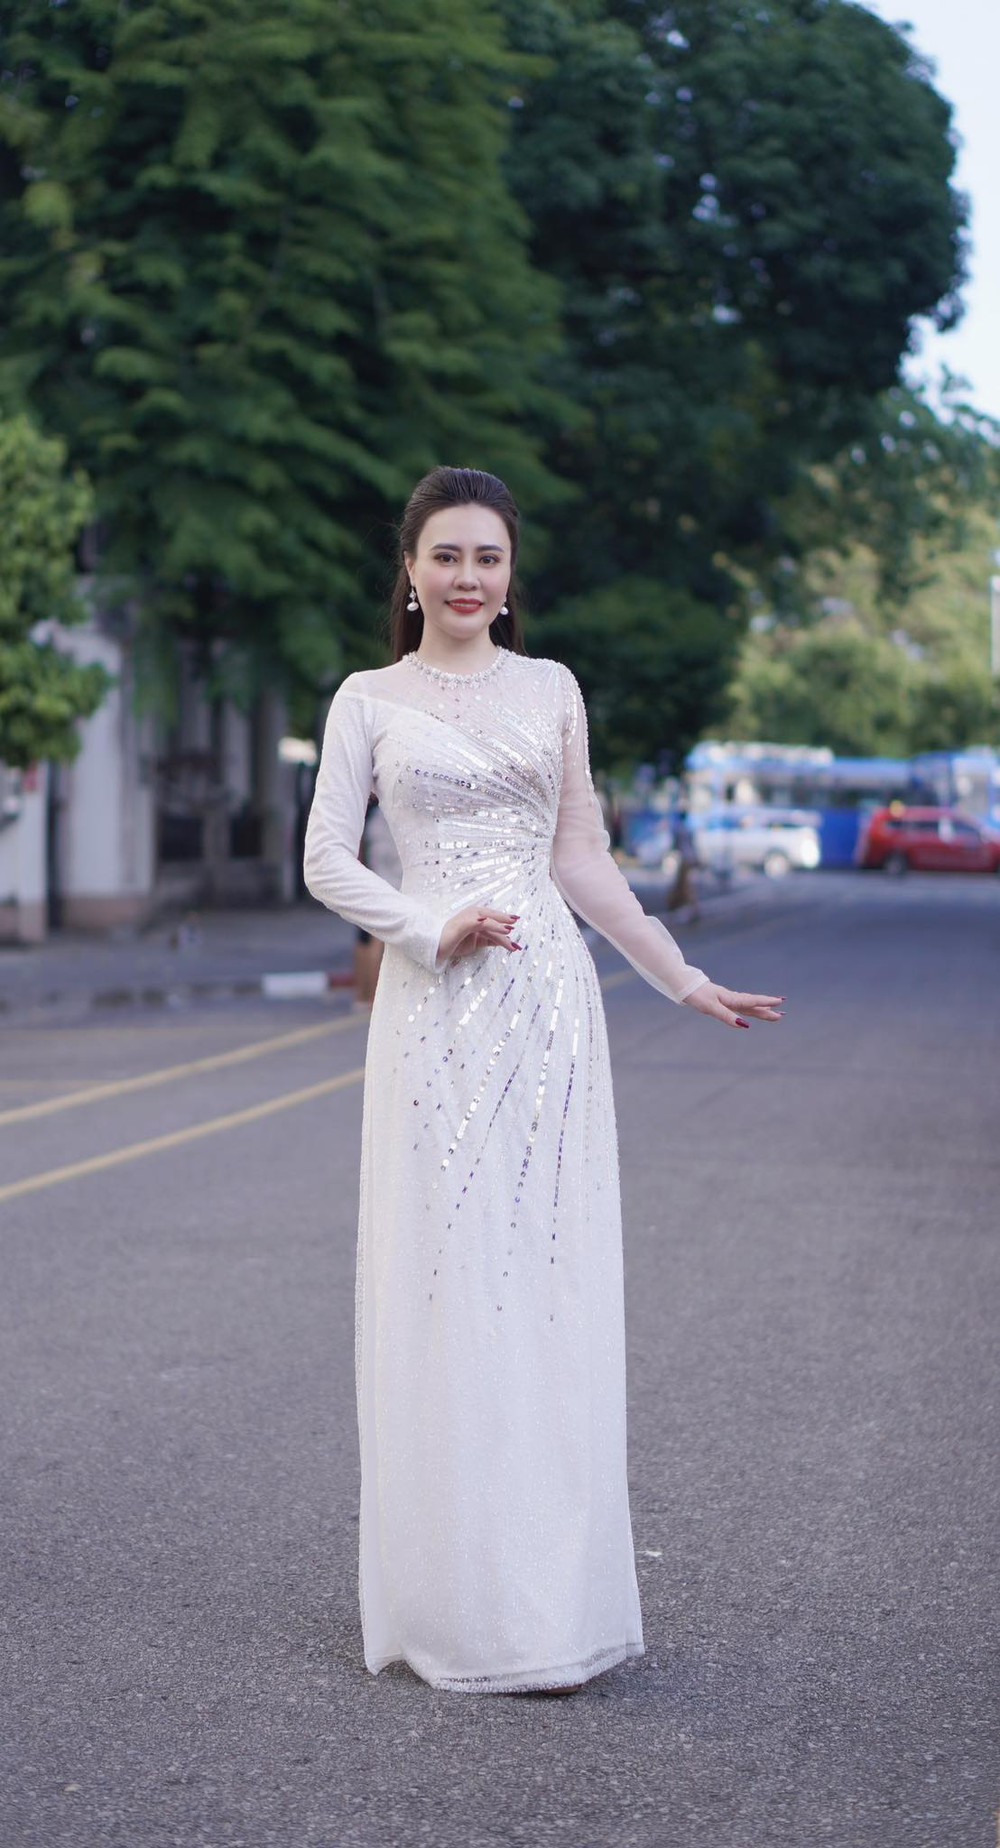 Hoa hậu Phan Kim Oanh trở lại Myanmar sau 7 tháng đăng quang, được truyền thông săn đón - Ảnh 6.